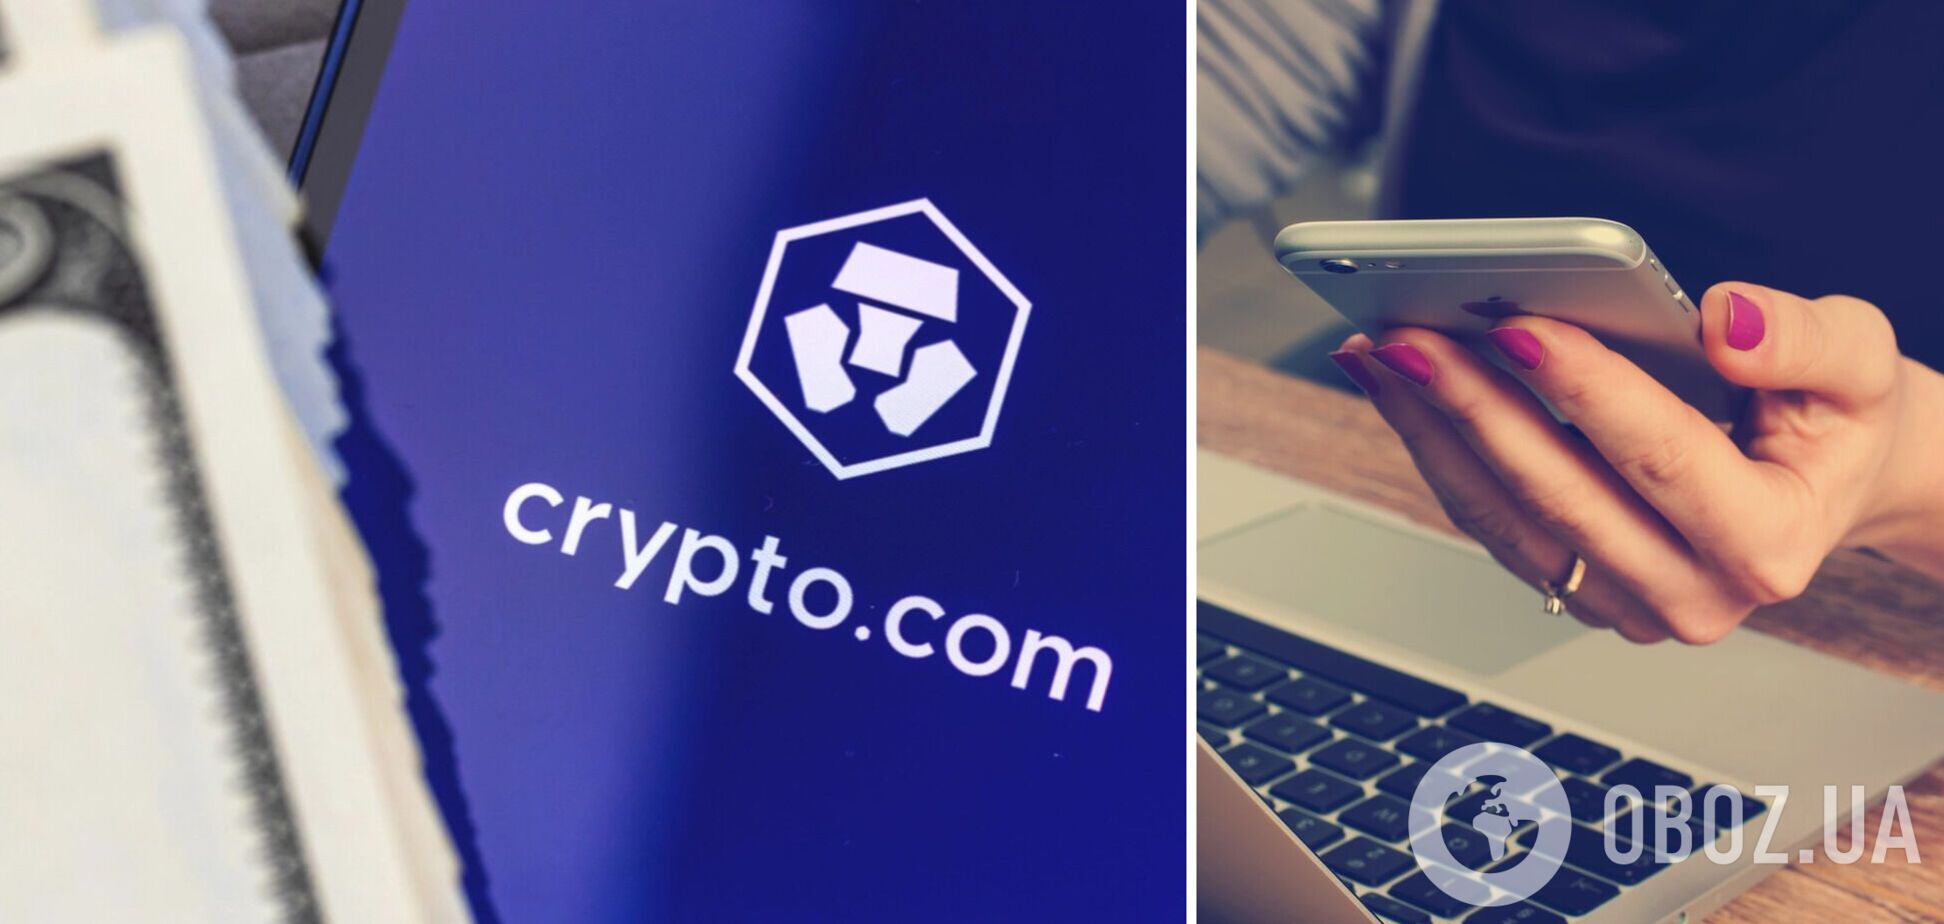 Криптобиржа Crypto.com подала в суд на клиентку из-за $7 млн